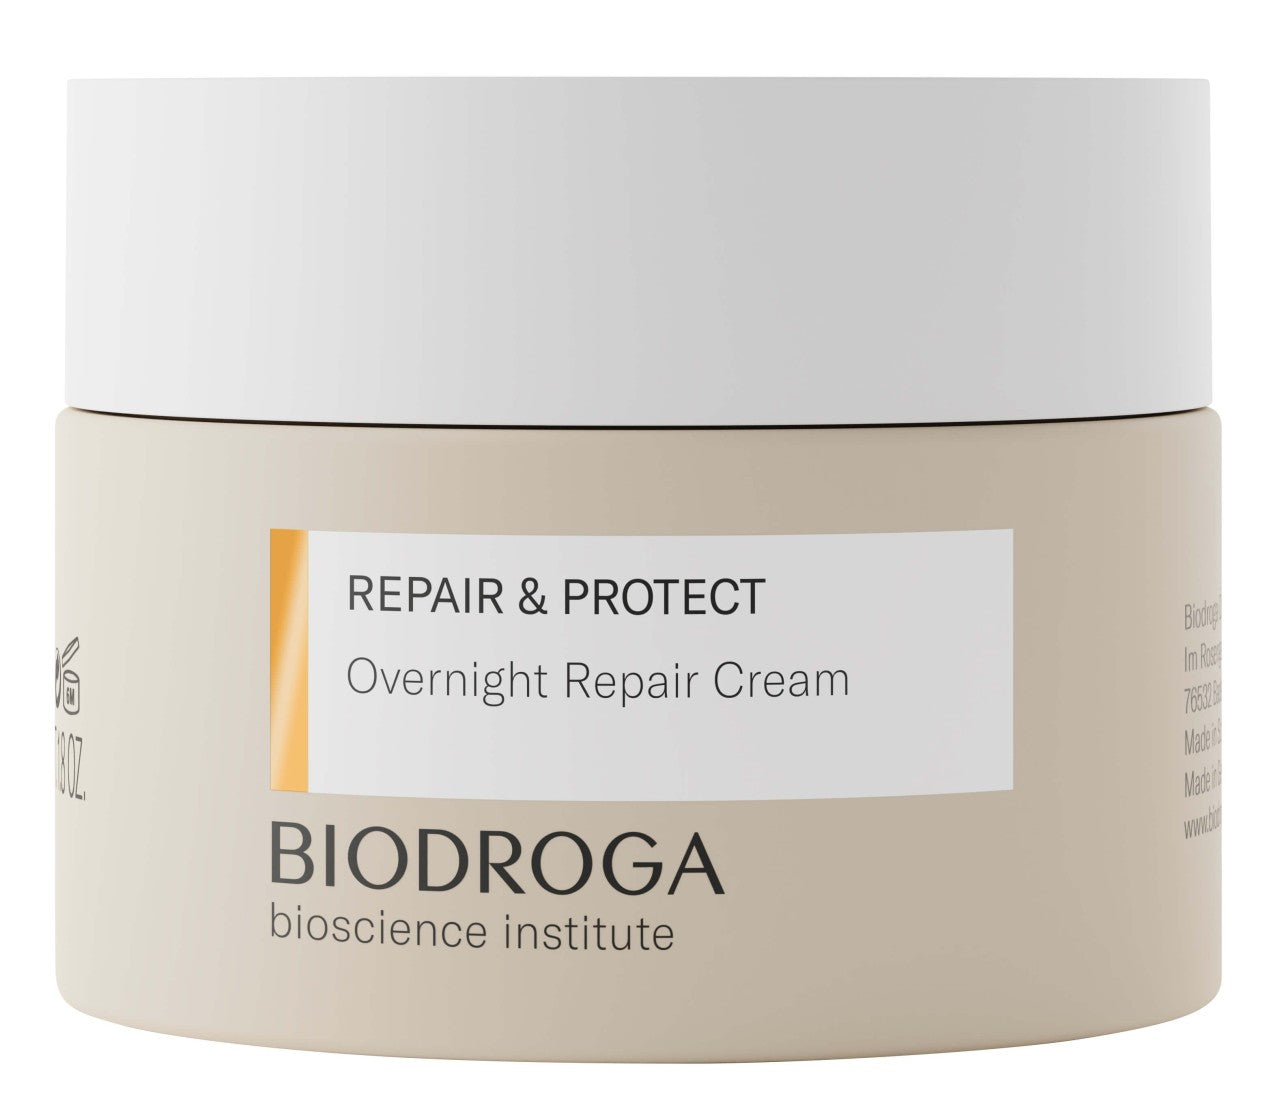 BIODROGA | REPAIR & PROTECT | Overnight Repair Cream